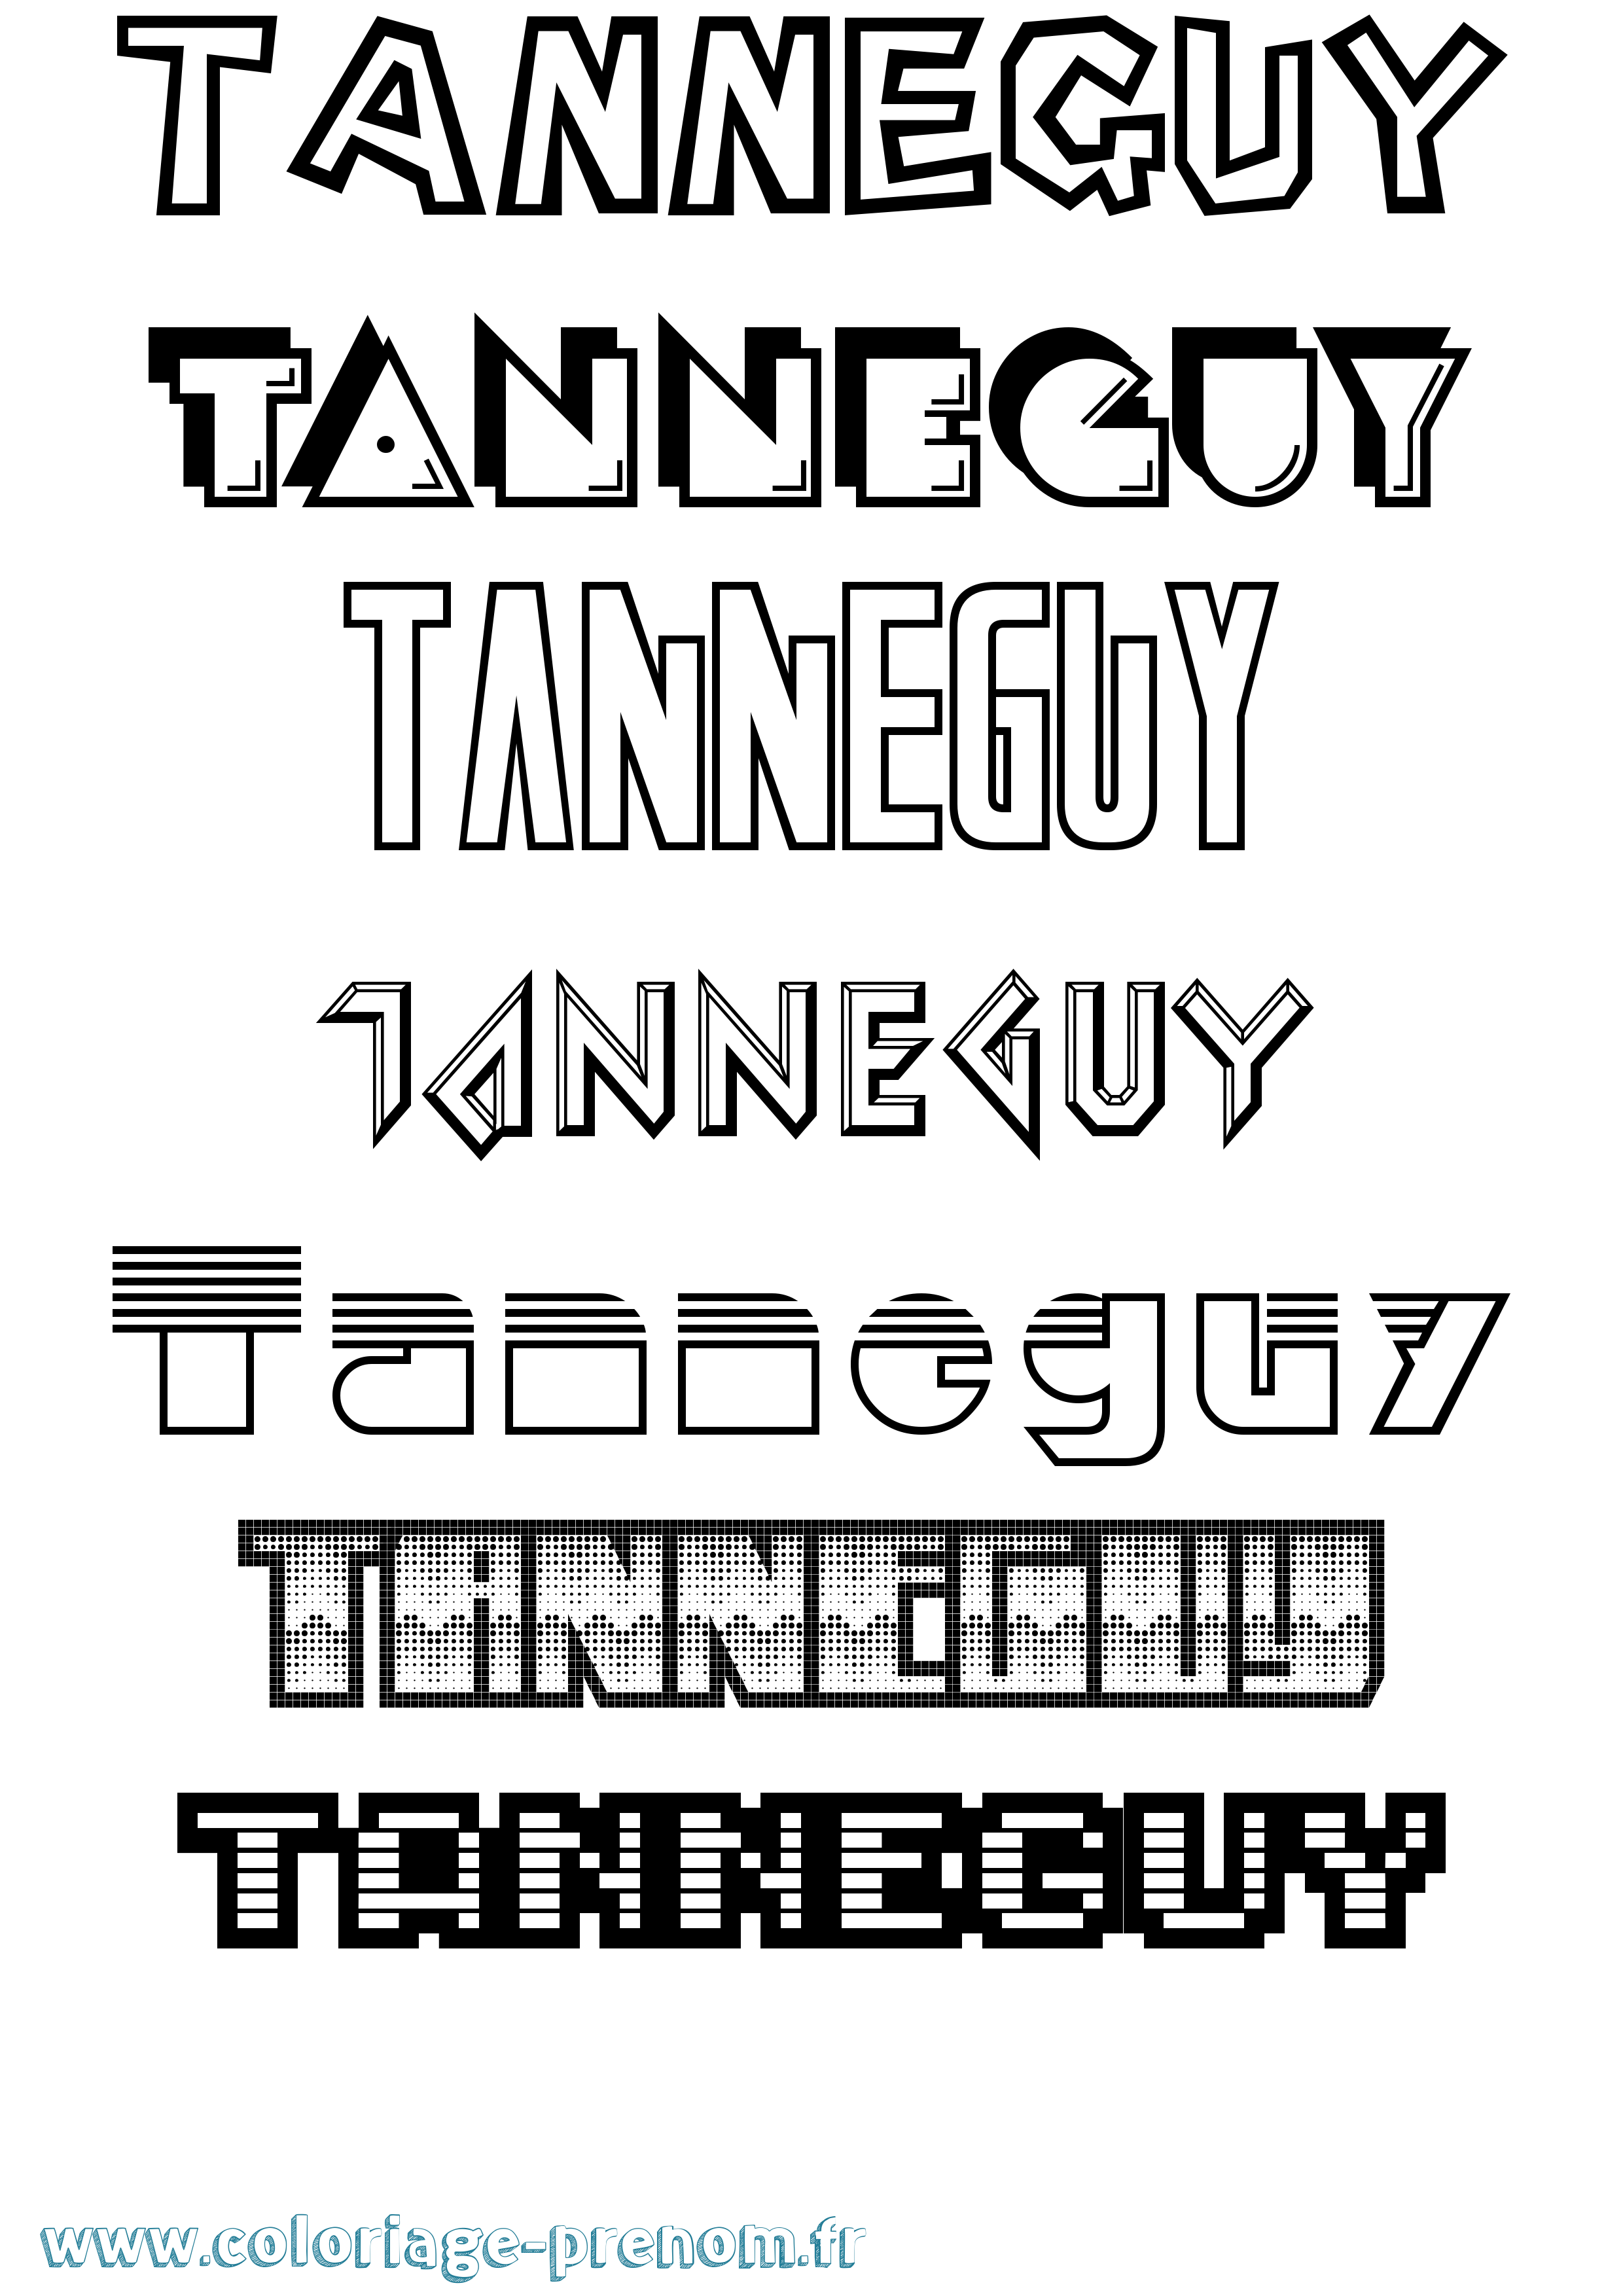 Coloriage prénom Tanneguy Jeux Vidéos